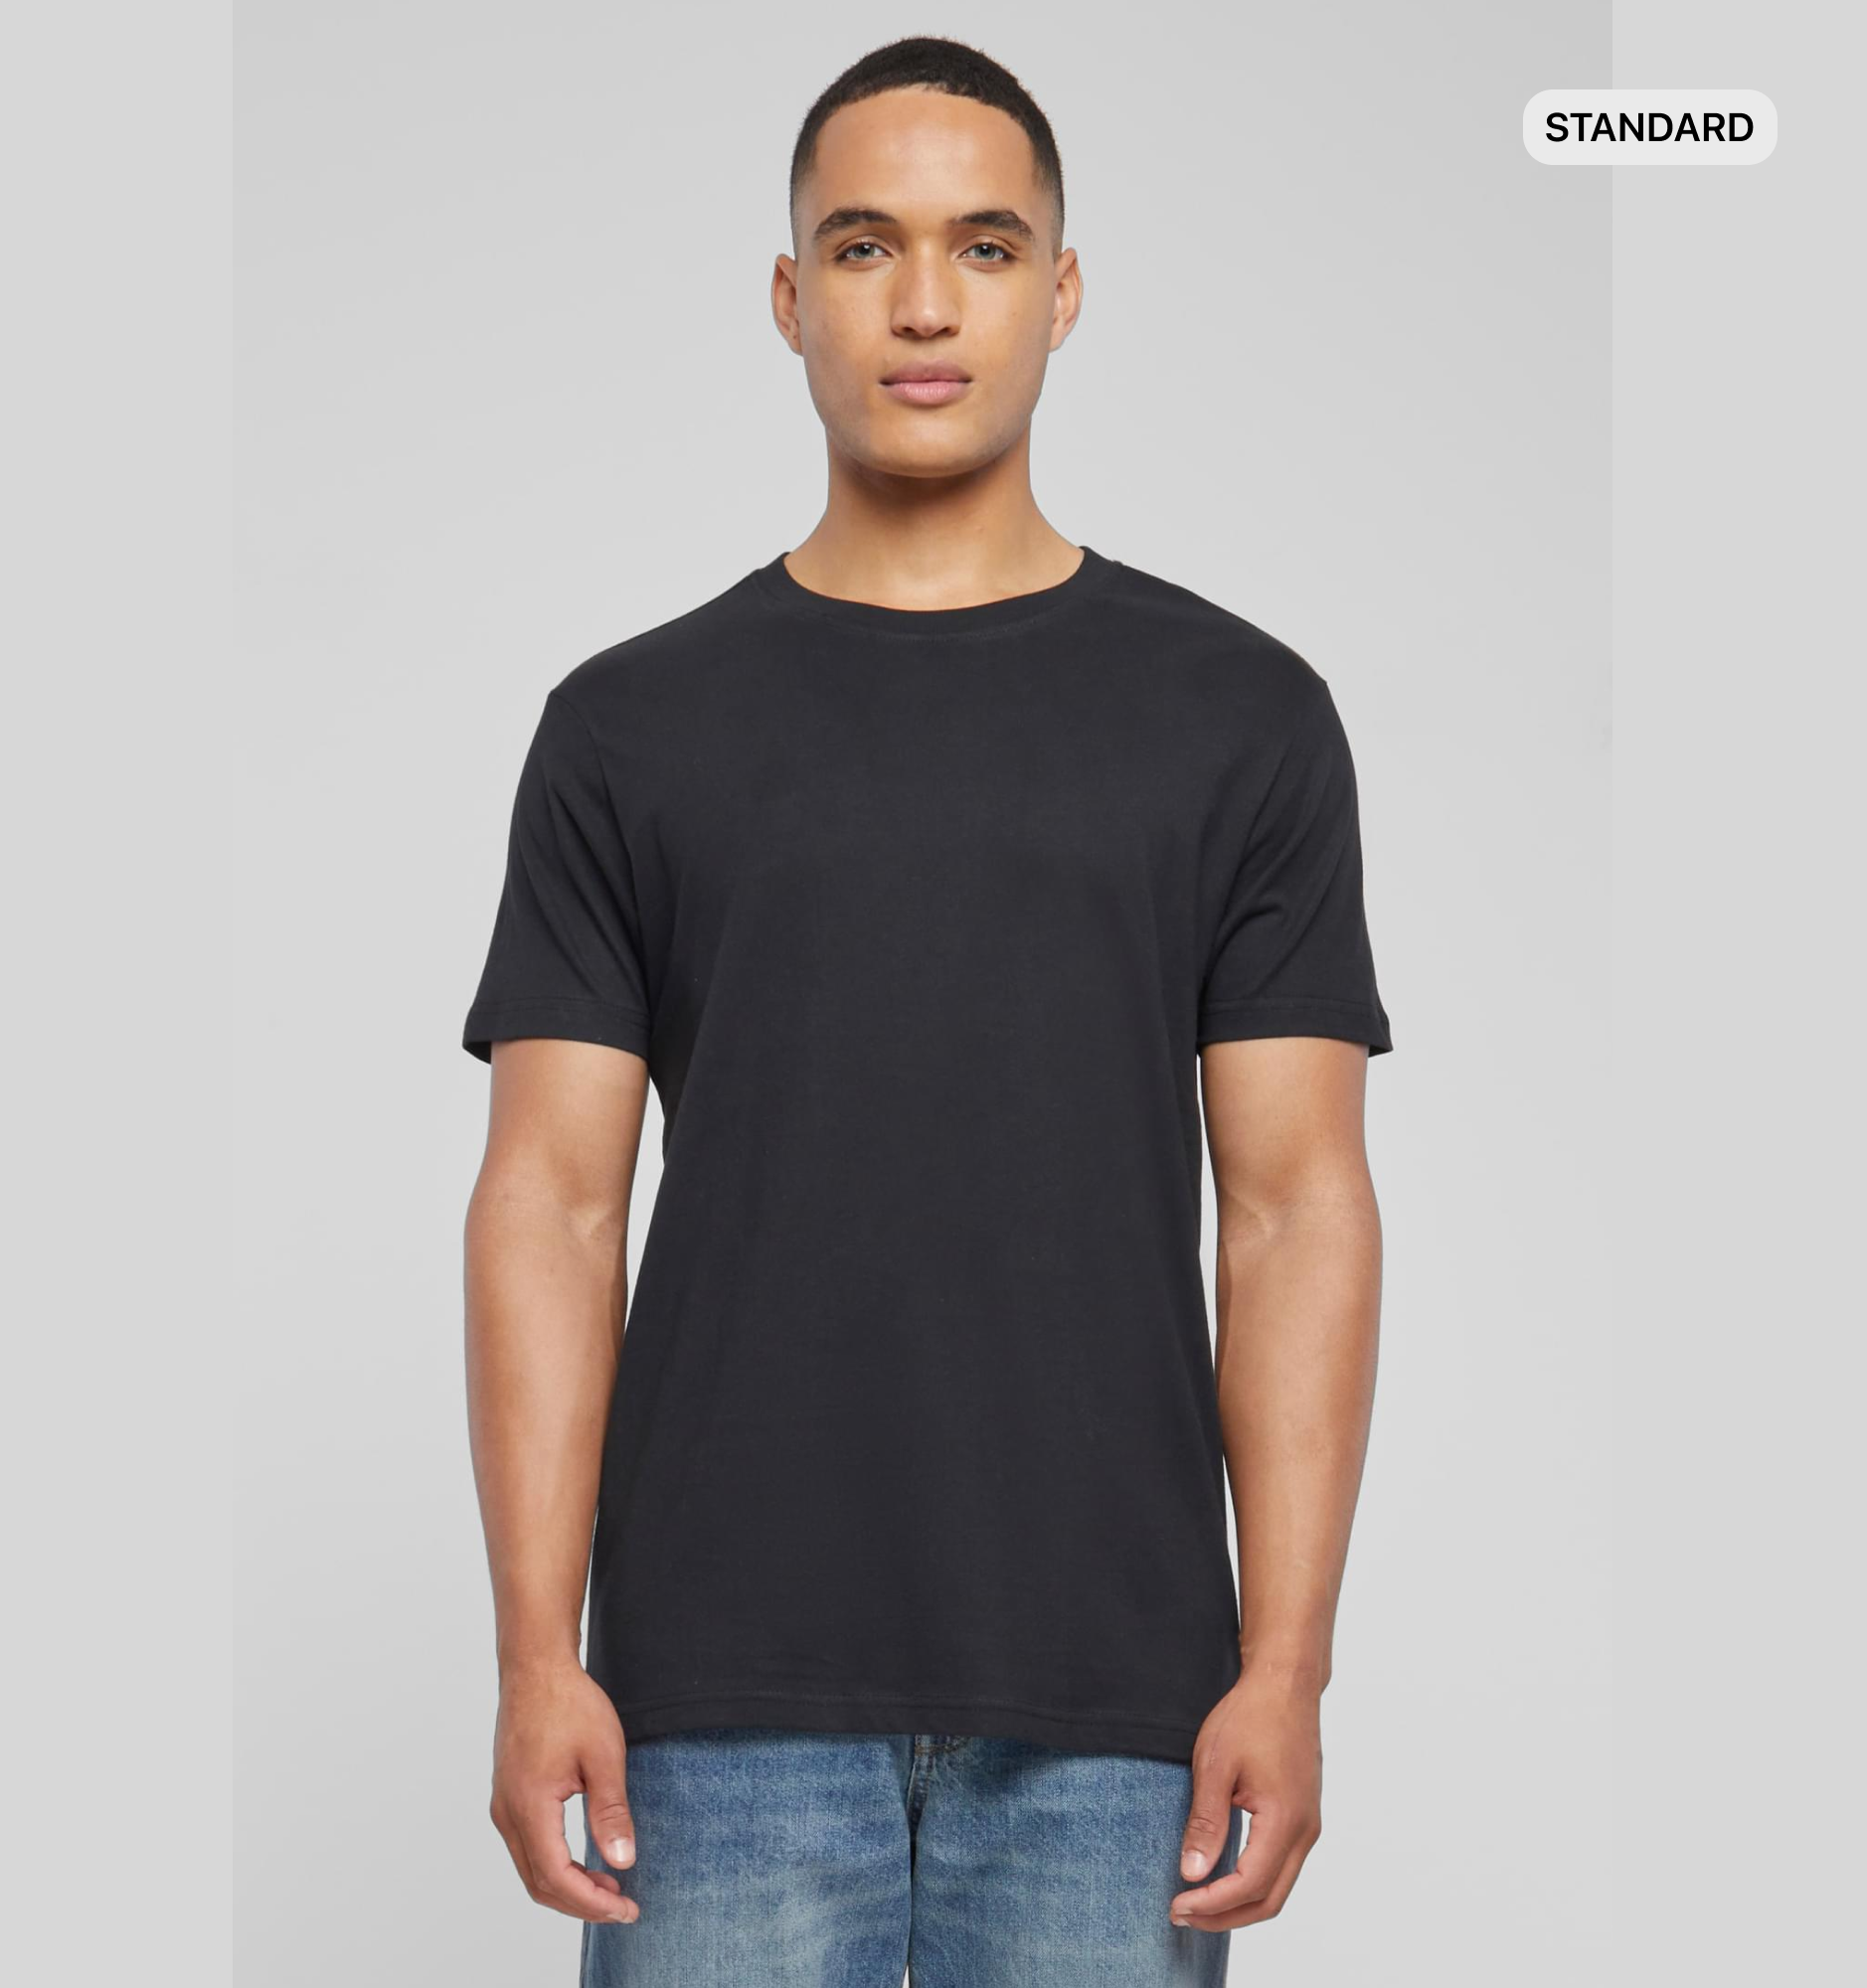 T-shirt/Standard (Round Neck)